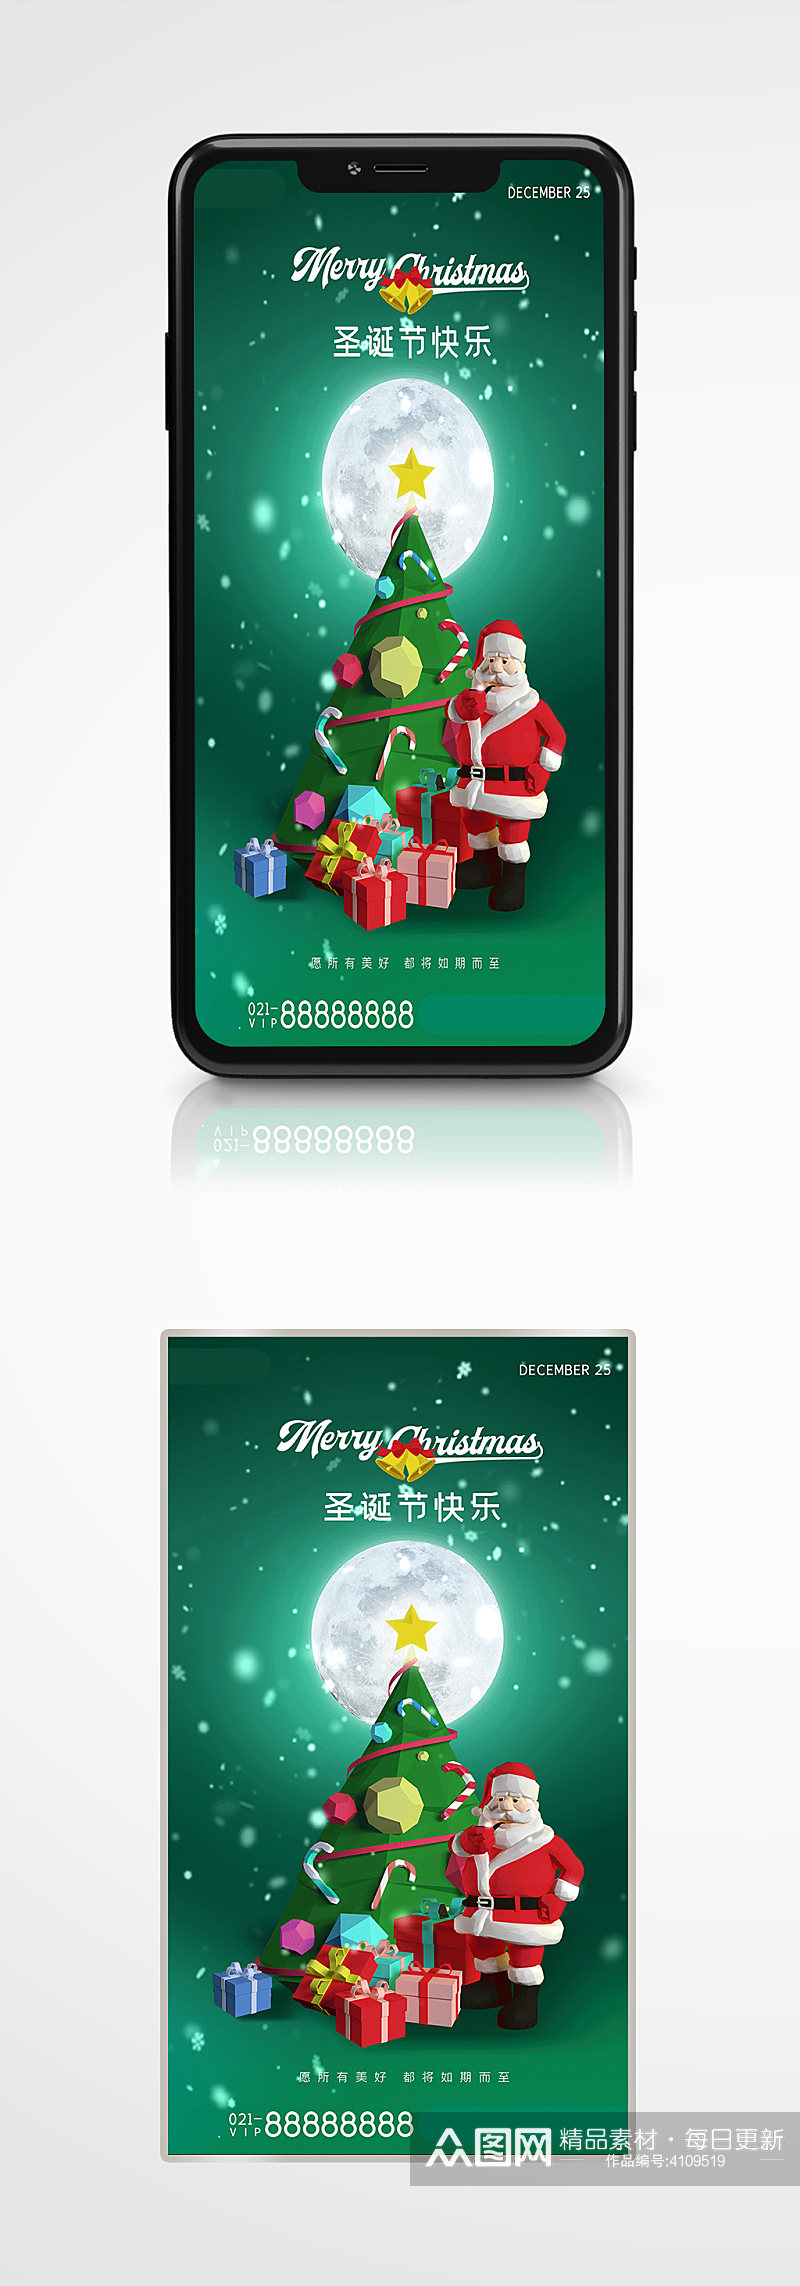 圣诞节快乐祝福手机gif海报绿色卡通素材